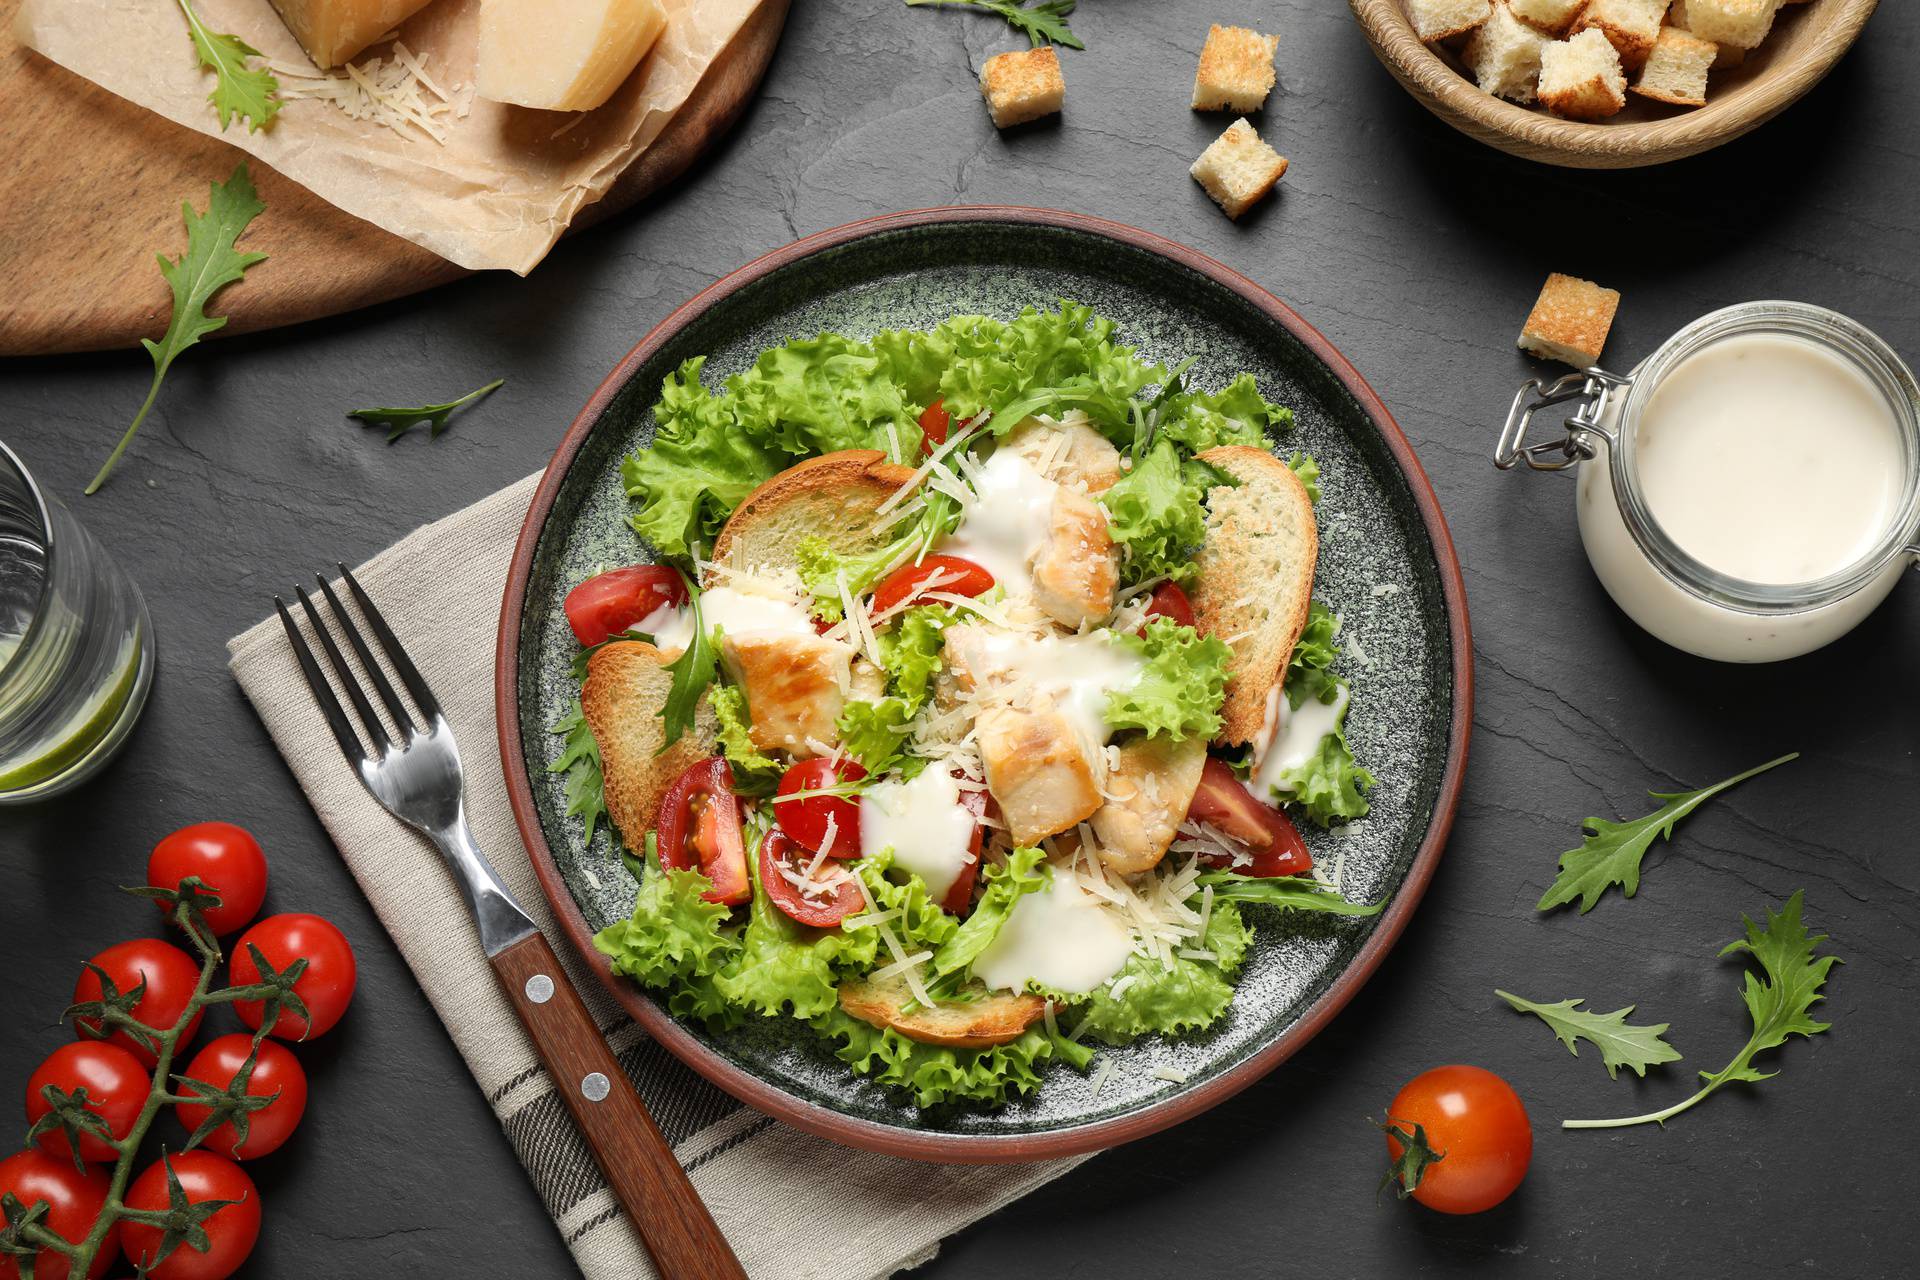 Fino i jednostavno: Cezar salatu možete lako spremiti kod kuće